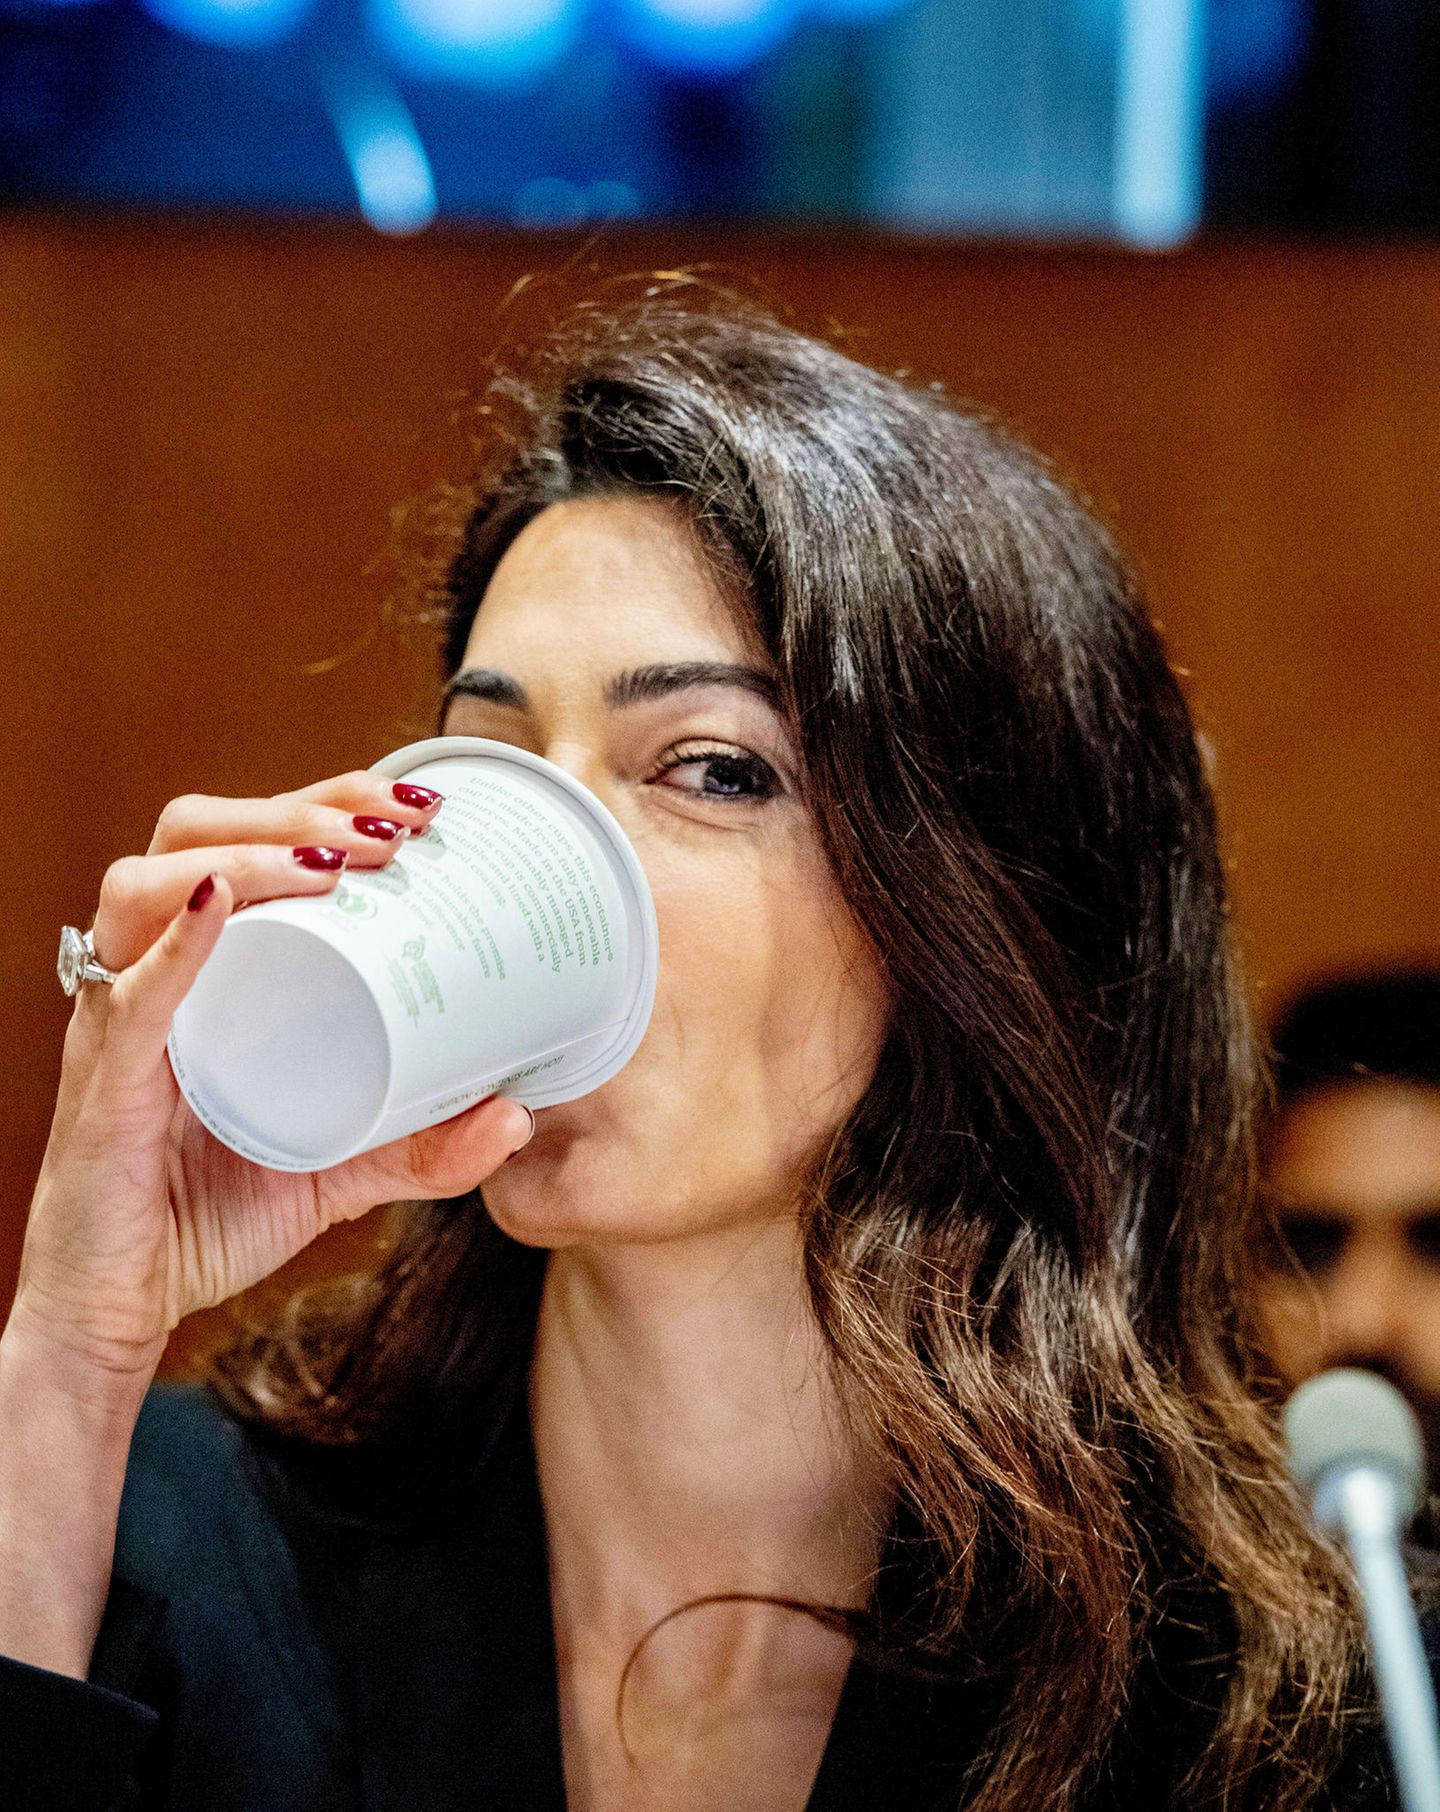 Auch eine Power-Frau wie Amal Clooney braucht mal einen Koffein-Kick zwischendurch.